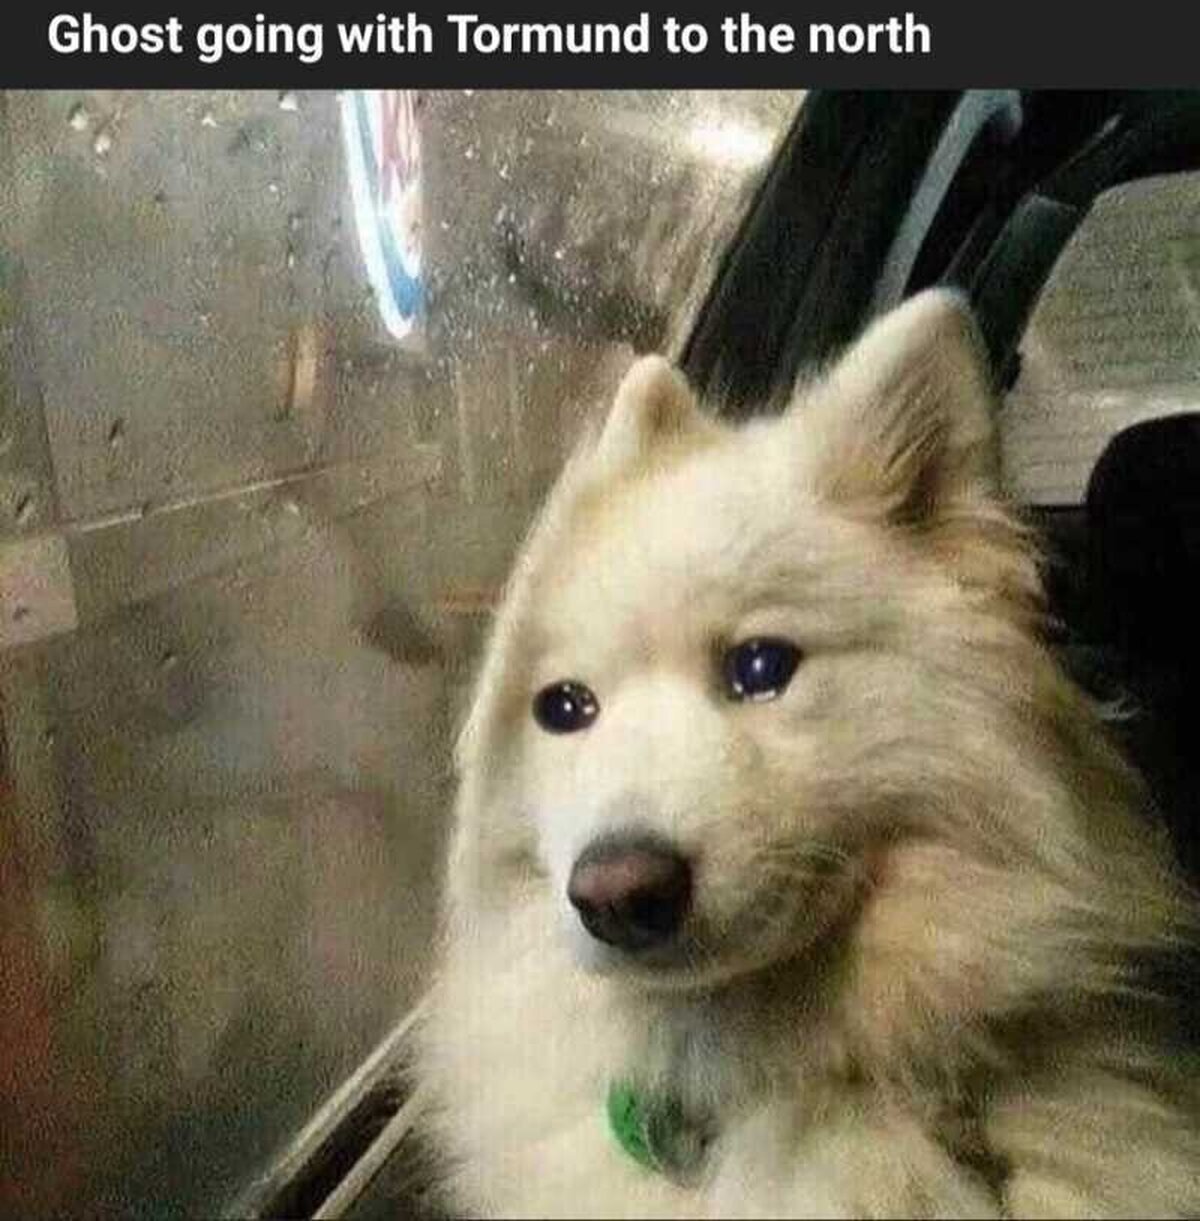 Fantasma acompañando a Tormund al norte